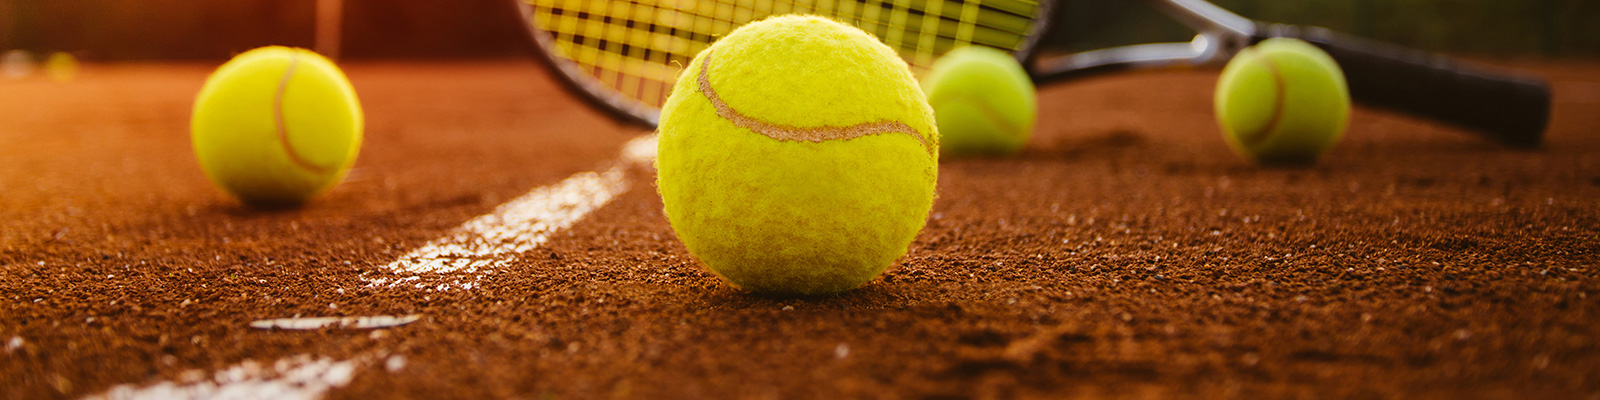 Immagine di una racchetta da tennis